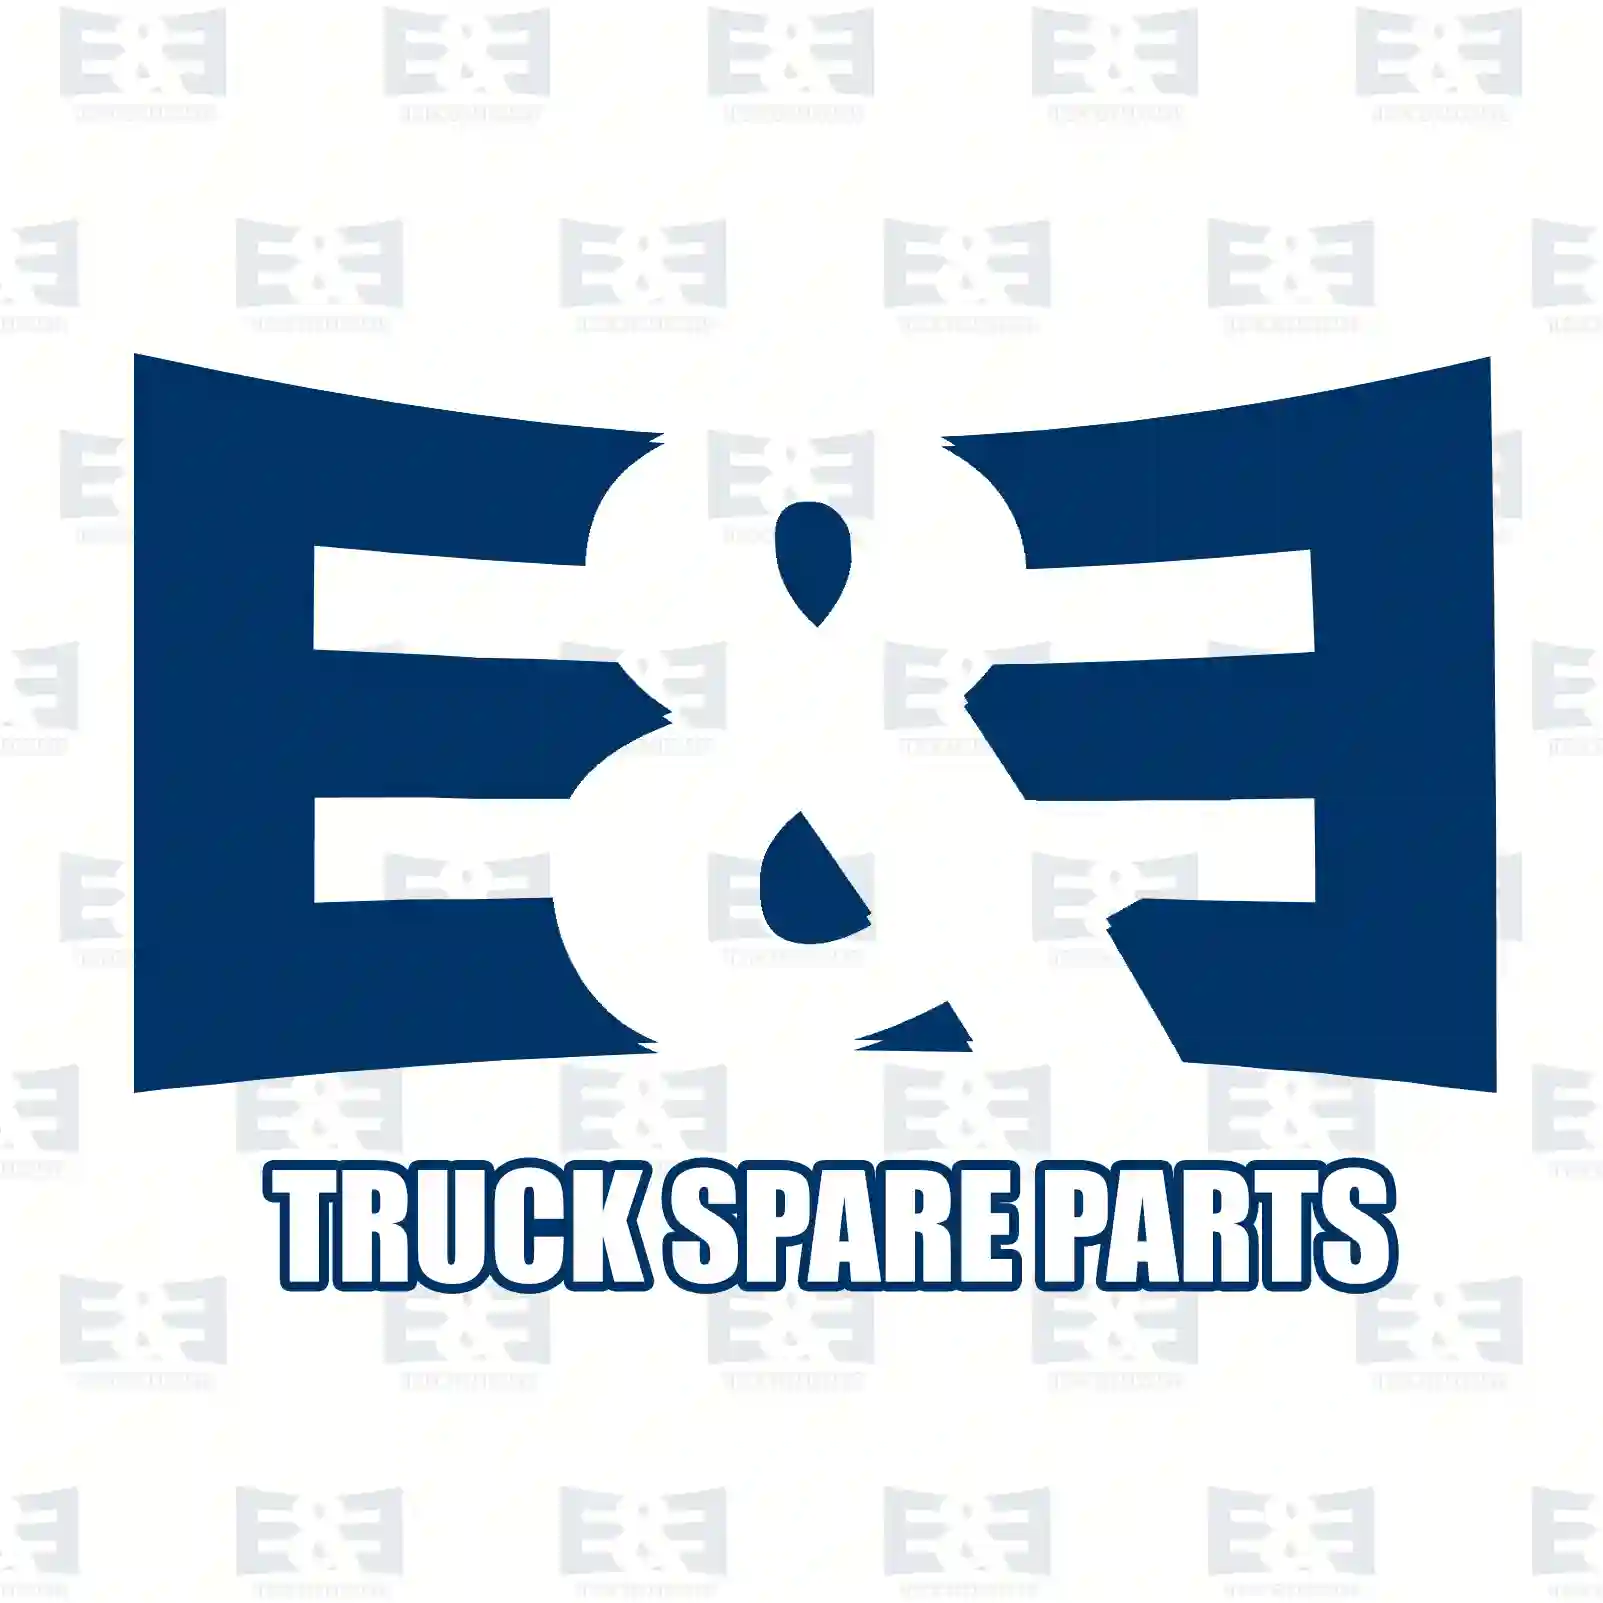 Lamp socket, ceramic, 2E2297615, 6Y0941855S3, 8KB863949S3 ||  2E2297615 E&E Truck Spare Parts | Truck Spare Parts, Auotomotive Spare Parts Lamp socket, ceramic, 2E2297615, 6Y0941855S3, 8KB863949S3 ||  2E2297615 E&E Truck Spare Parts | Truck Spare Parts, Auotomotive Spare Parts